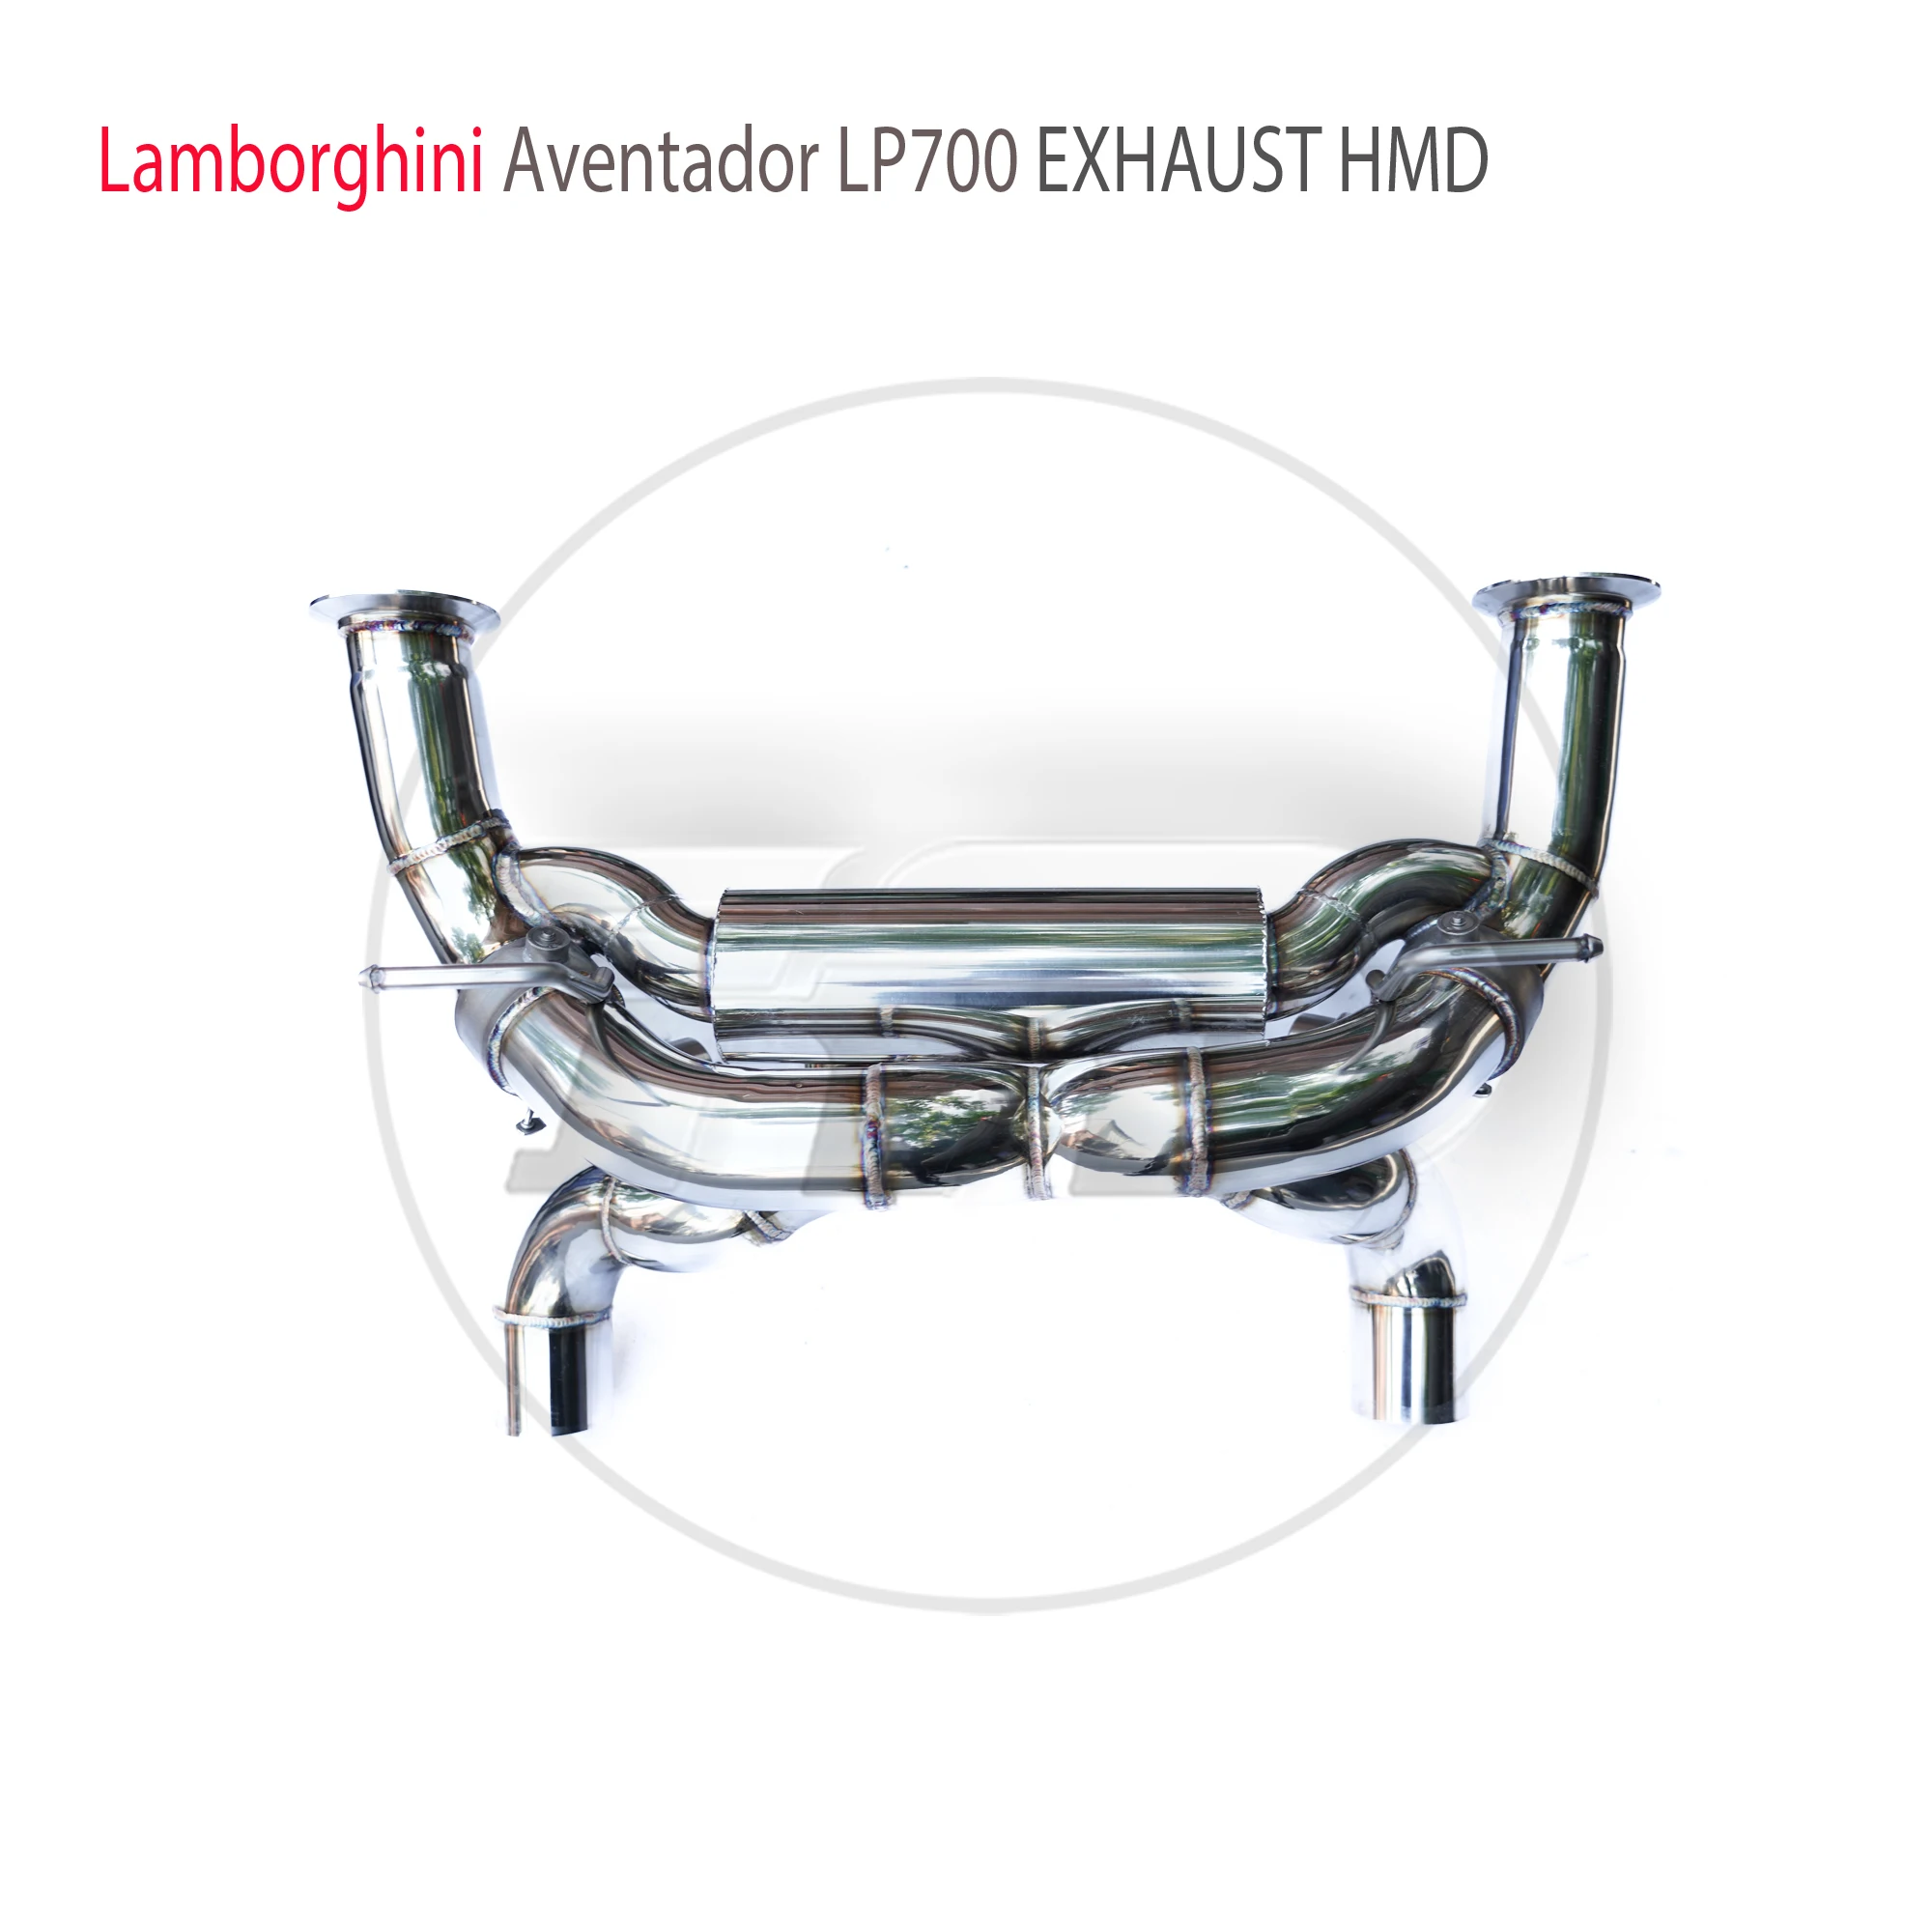 

HMD Stainless Steel Exhaust System Performance Catback for Lamborghini Aventador LP700-4 With SVJ Body Kit Valve Muffler